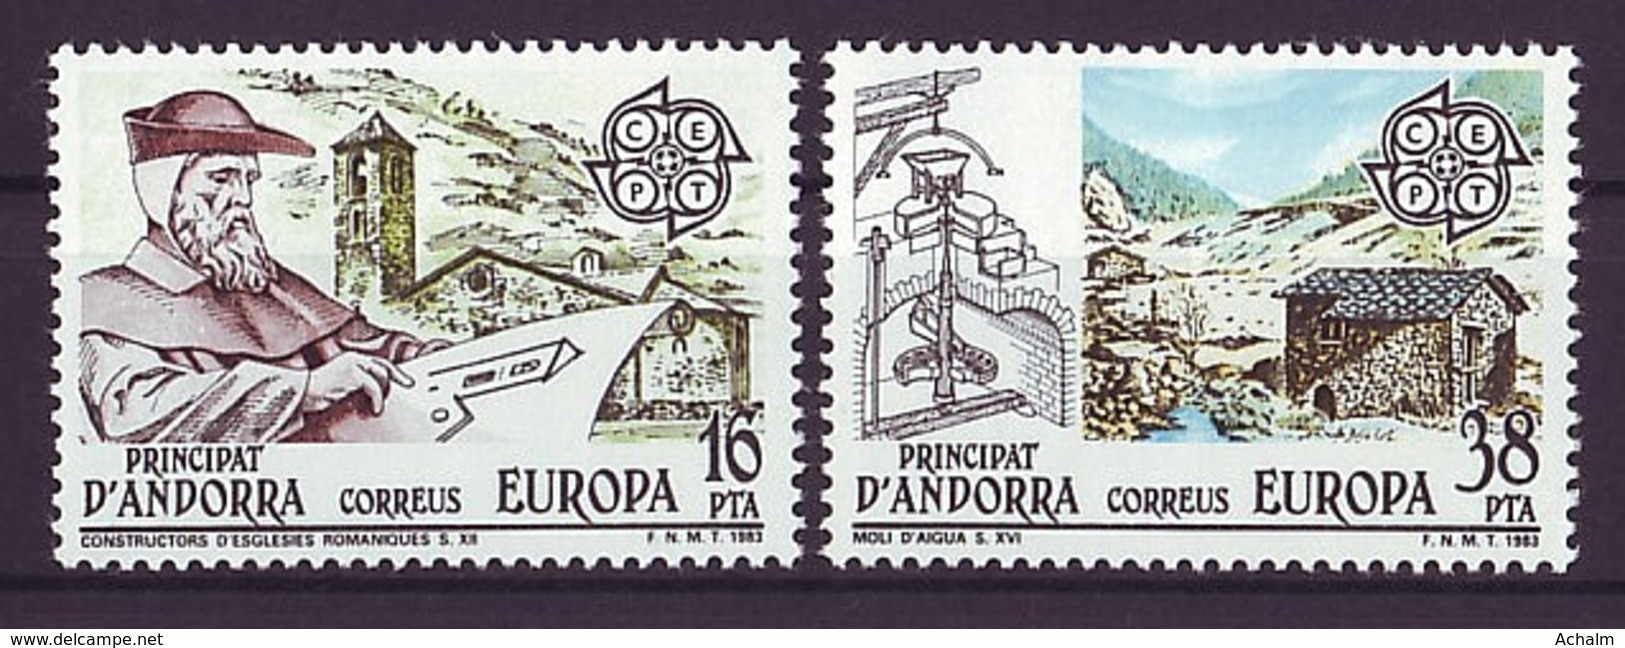 Andorra - Spanische Post 1983 / MiNr. 165-166 ** MNH / Europa CEPT - Ungebraucht